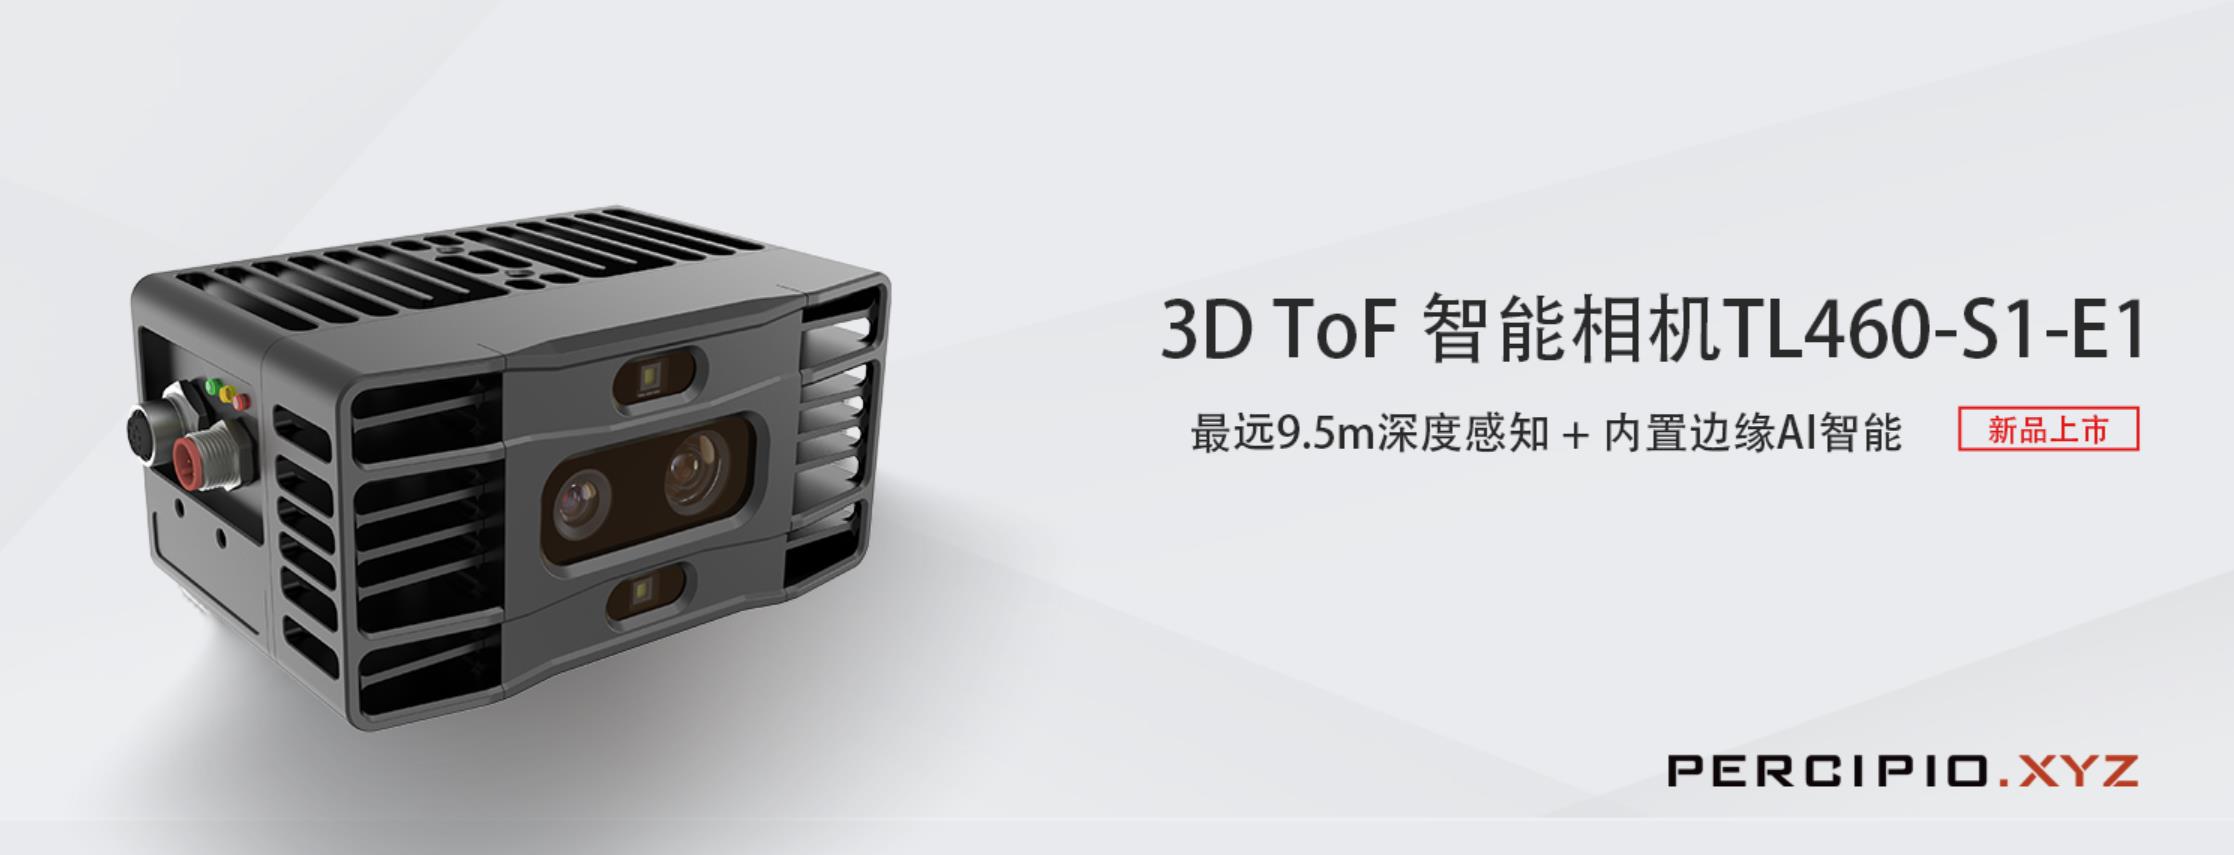 图漾科技-3D ToF 智能工业相机-TL460